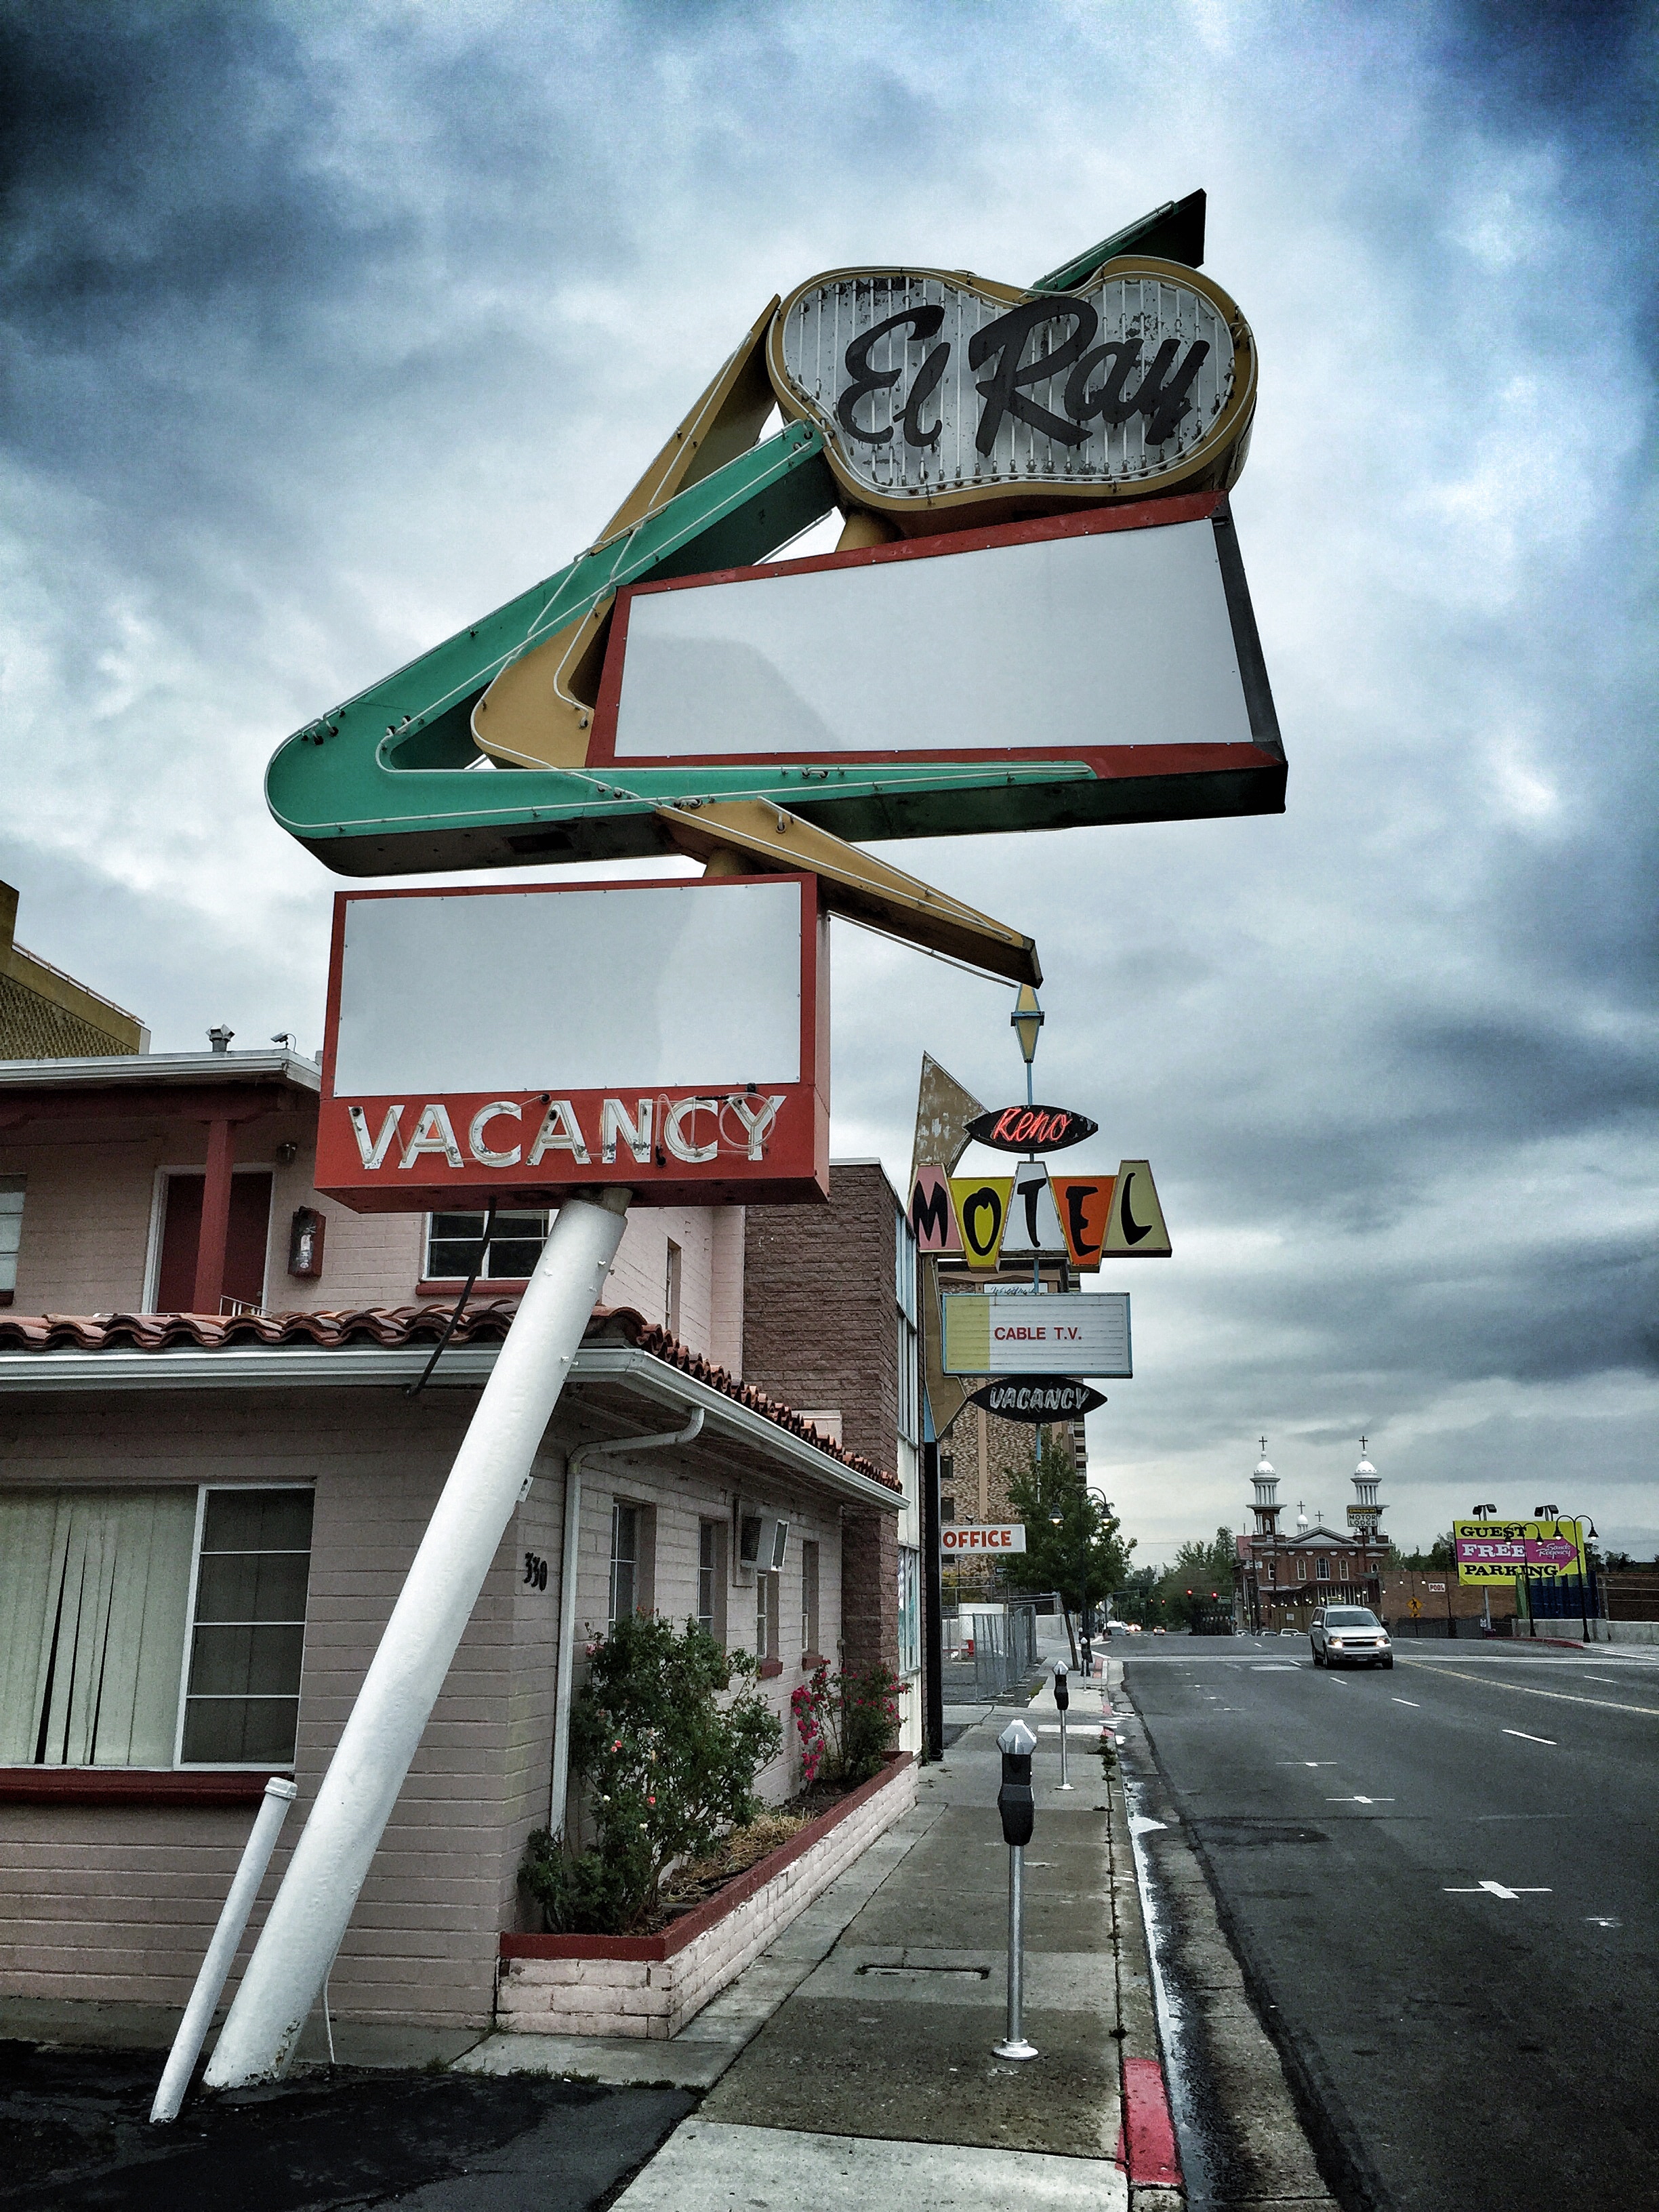 El Ray Motel - 330 North Arlington Avenue, Reno, Nevada U.S.A. - May 22, 2015